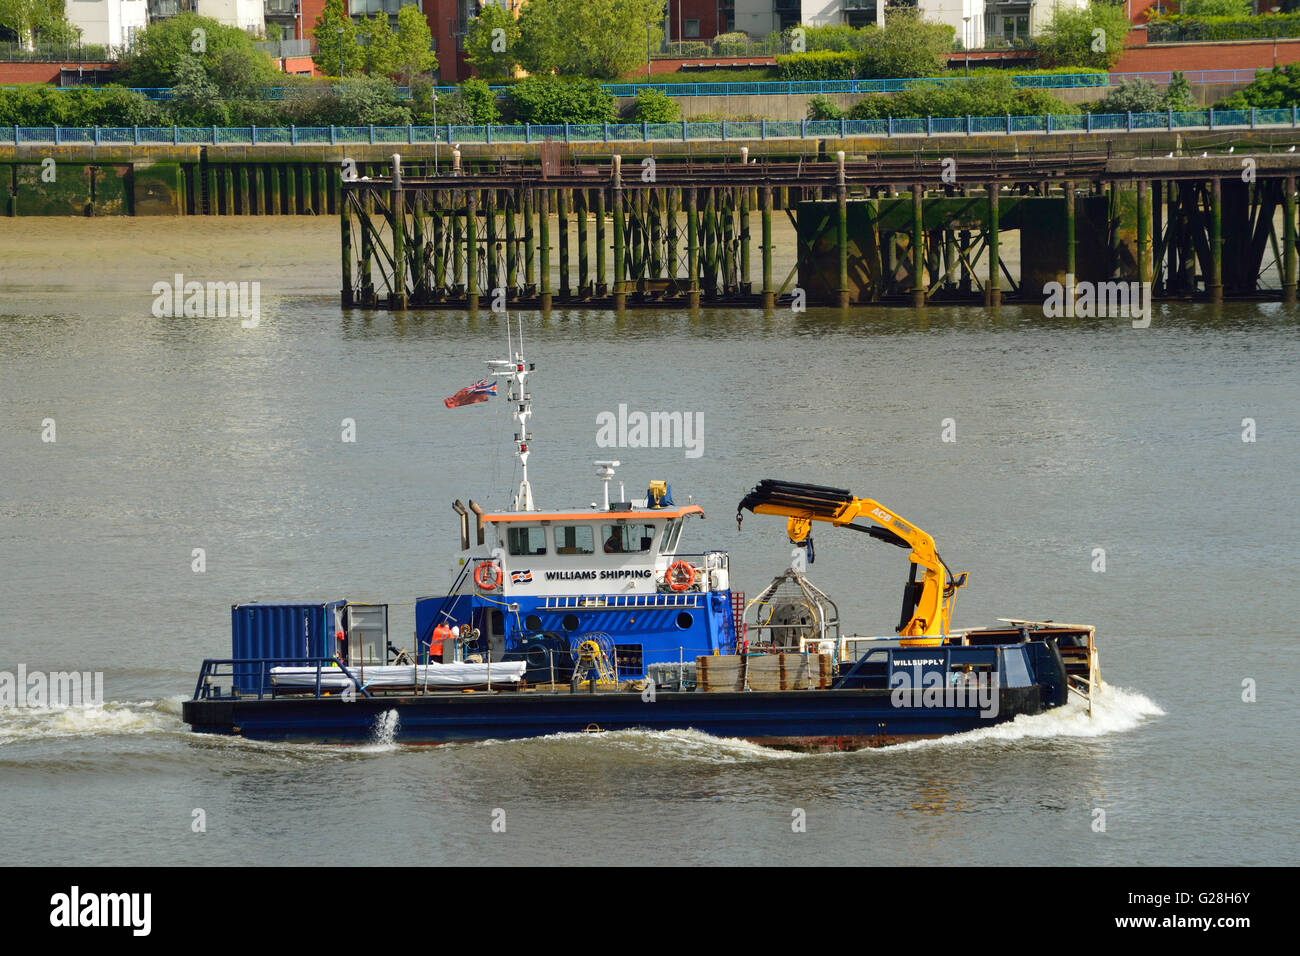 Williams del envío buque polivalente Willsupply encabezando el Támesis en Londres para ayudar con el Támesis Tideway project Foto de stock